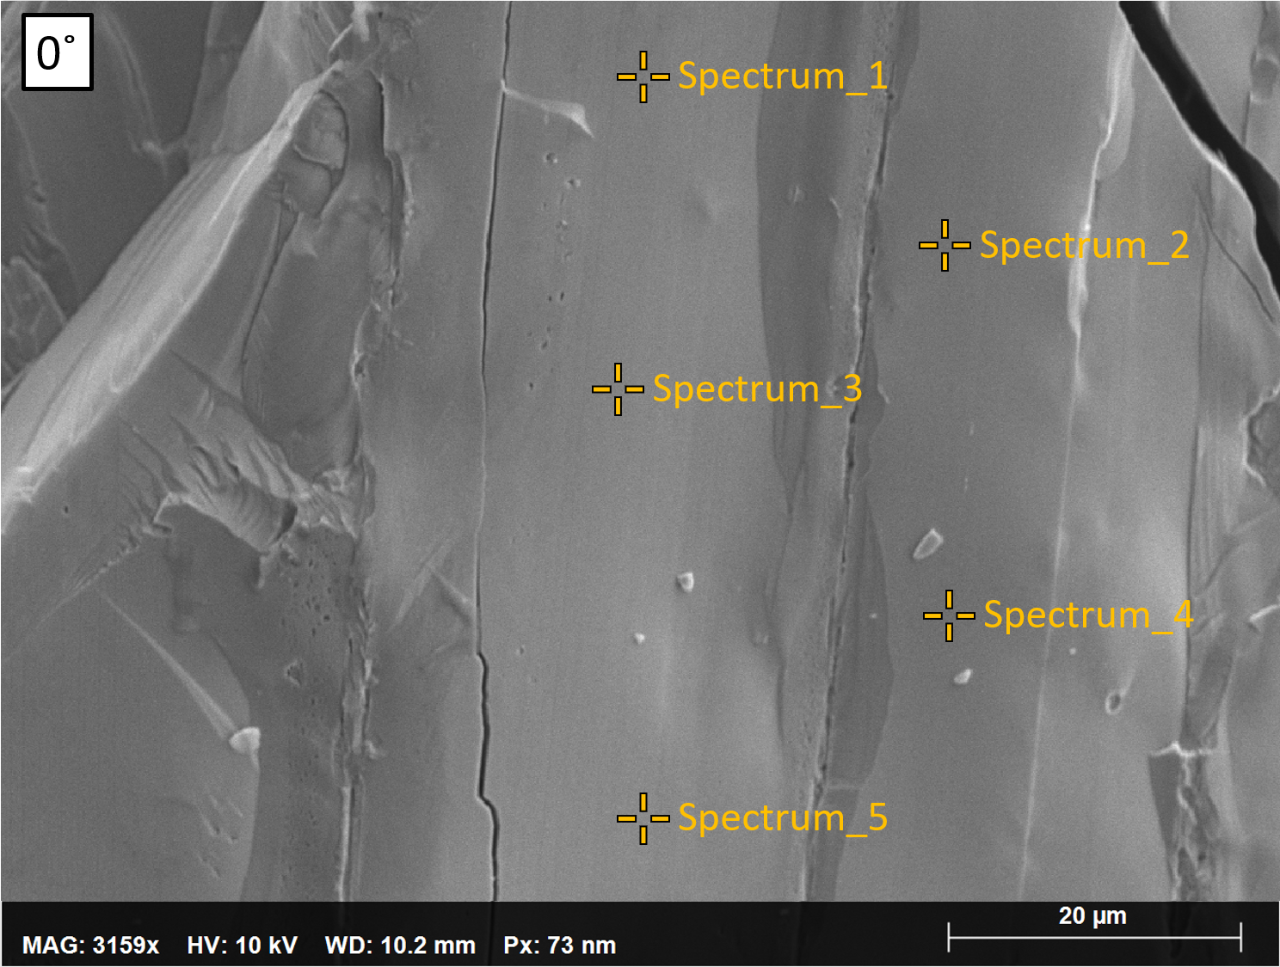 粗いサンプルの地形および認定された濃度値を有する三元合金の硒-イメージ